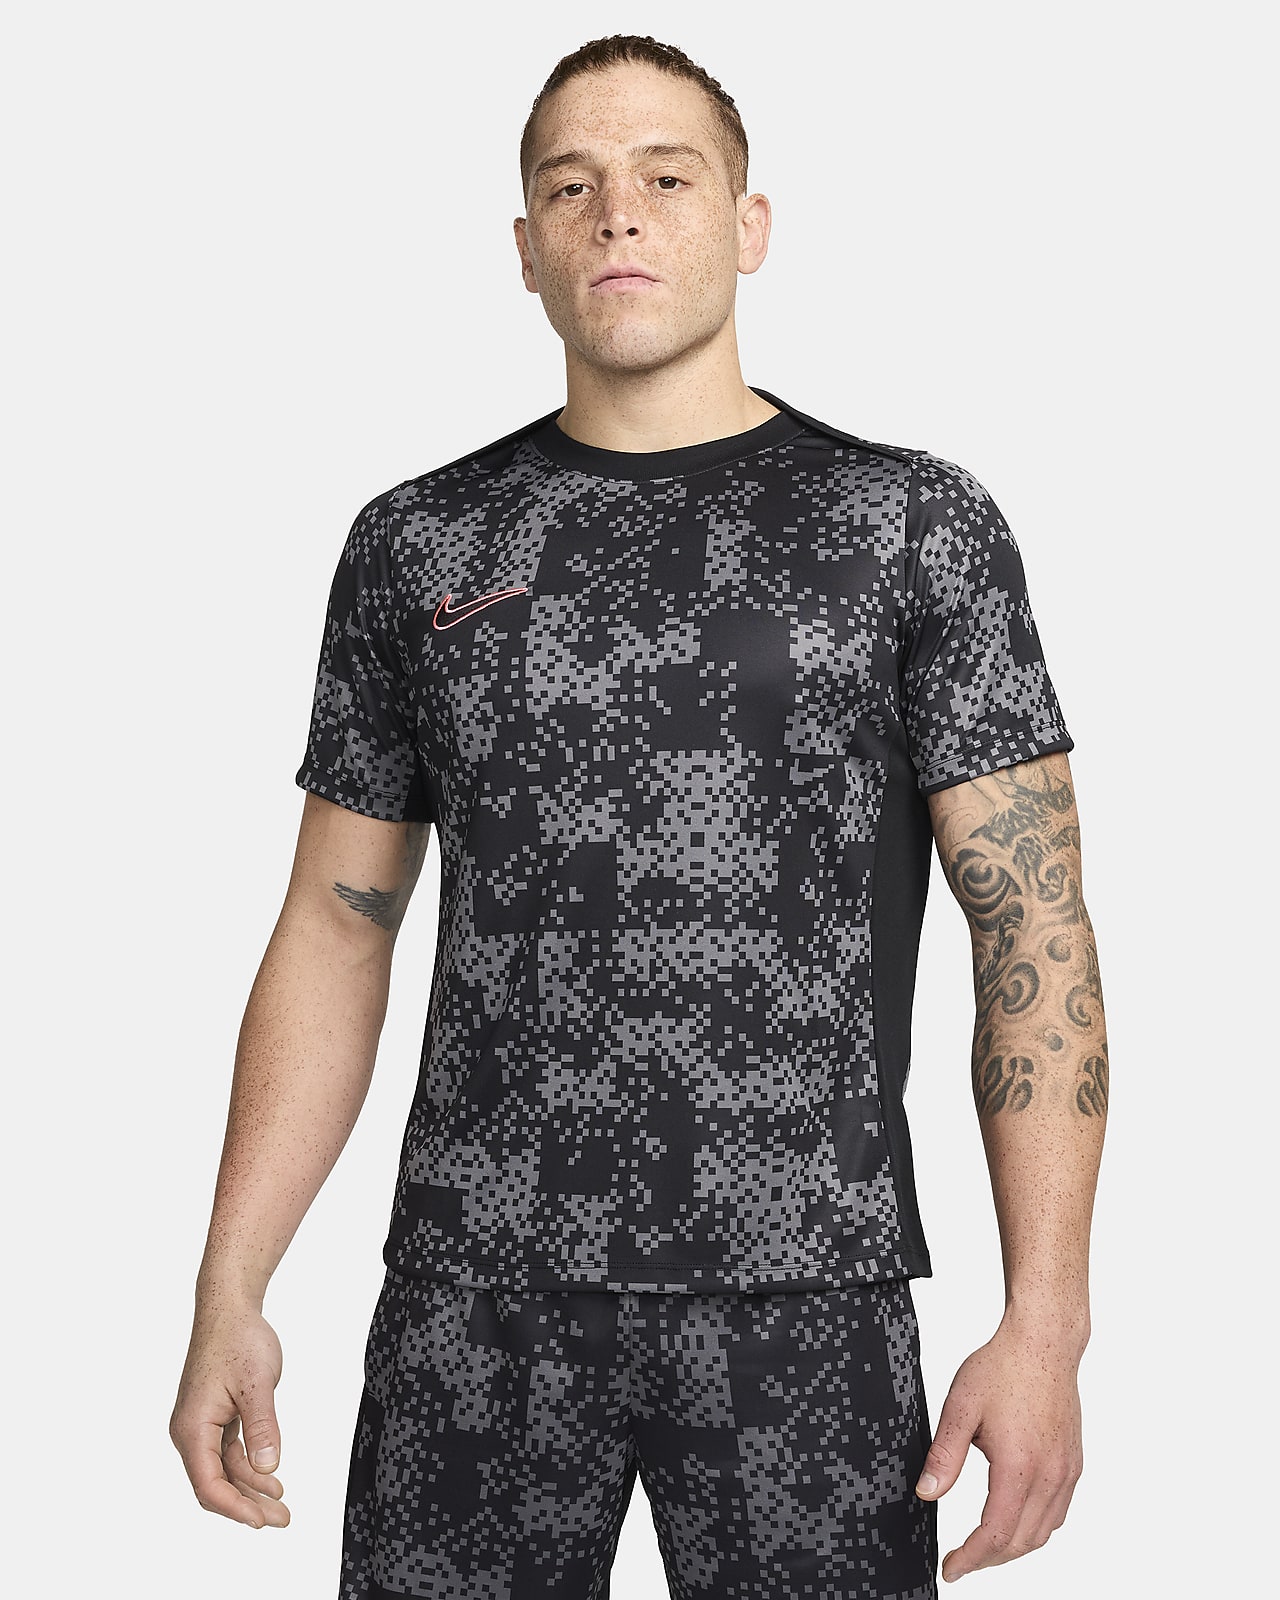 Pánské fotbalové tričko Dri-FIT Nike Academy Pro s krátkým rukávem a grafickým motivem